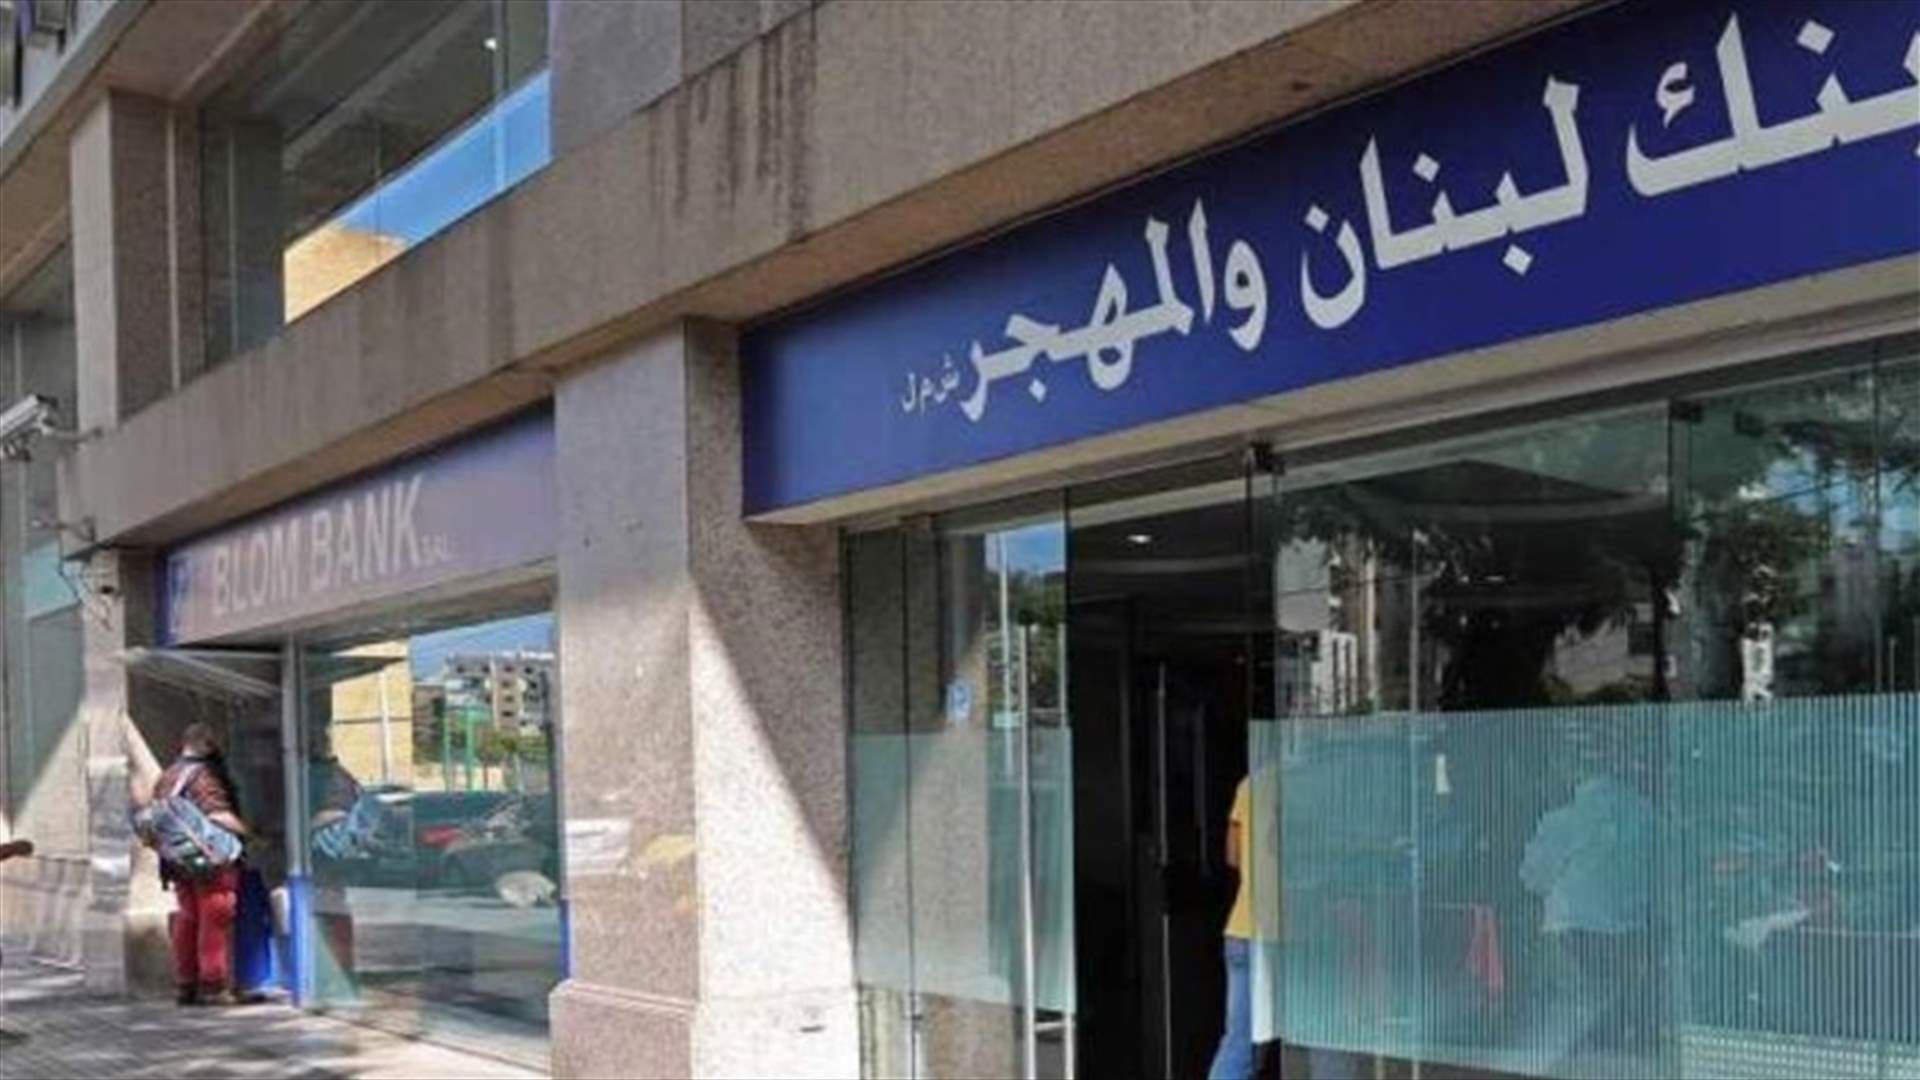 بنك لبنان والمهجر: باستطاعة العملاء التسديد بالدولار داخل لبنان بواسطة الشيكات أو التحاويل أو عبر البطاقات المصرفية